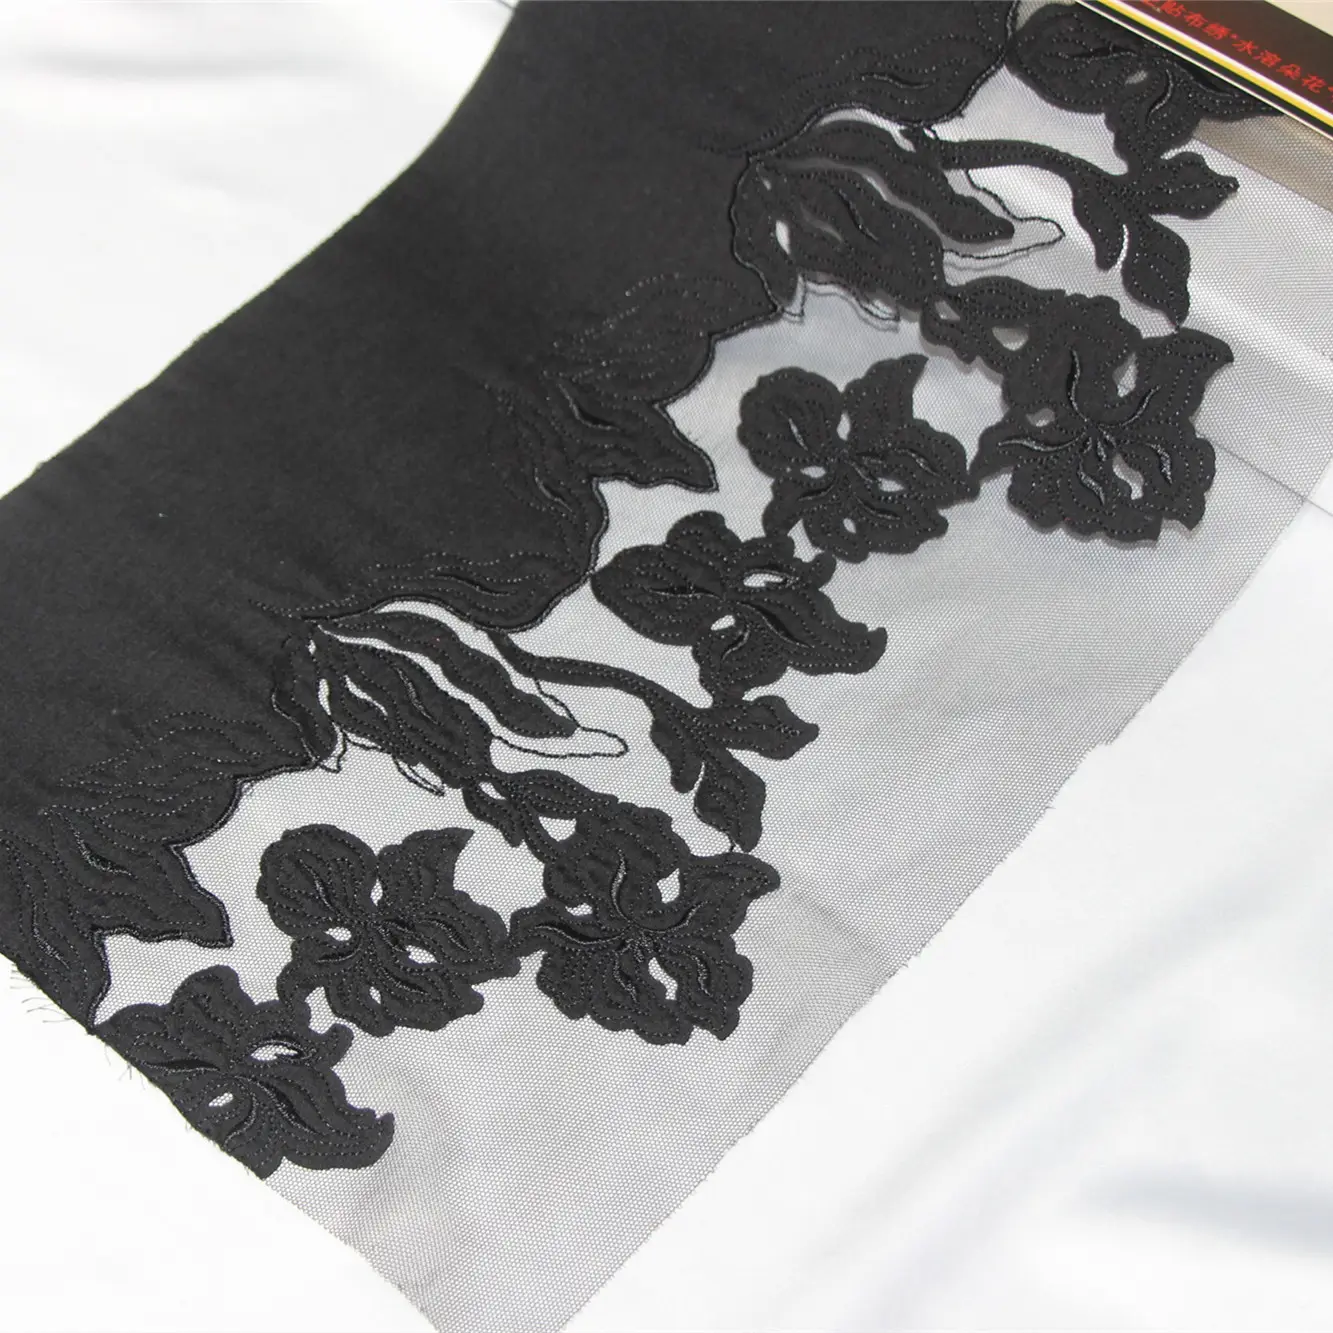 ผ้าลูกไม้ทูลสีดำสำหรับผู้หญิง,ผ้าตัดเย็บด้วยเลเซอร์สำหรับตัดเป็นผ้าบางปักลายลูกไม้ดีไซน์ใหม่ปี2022